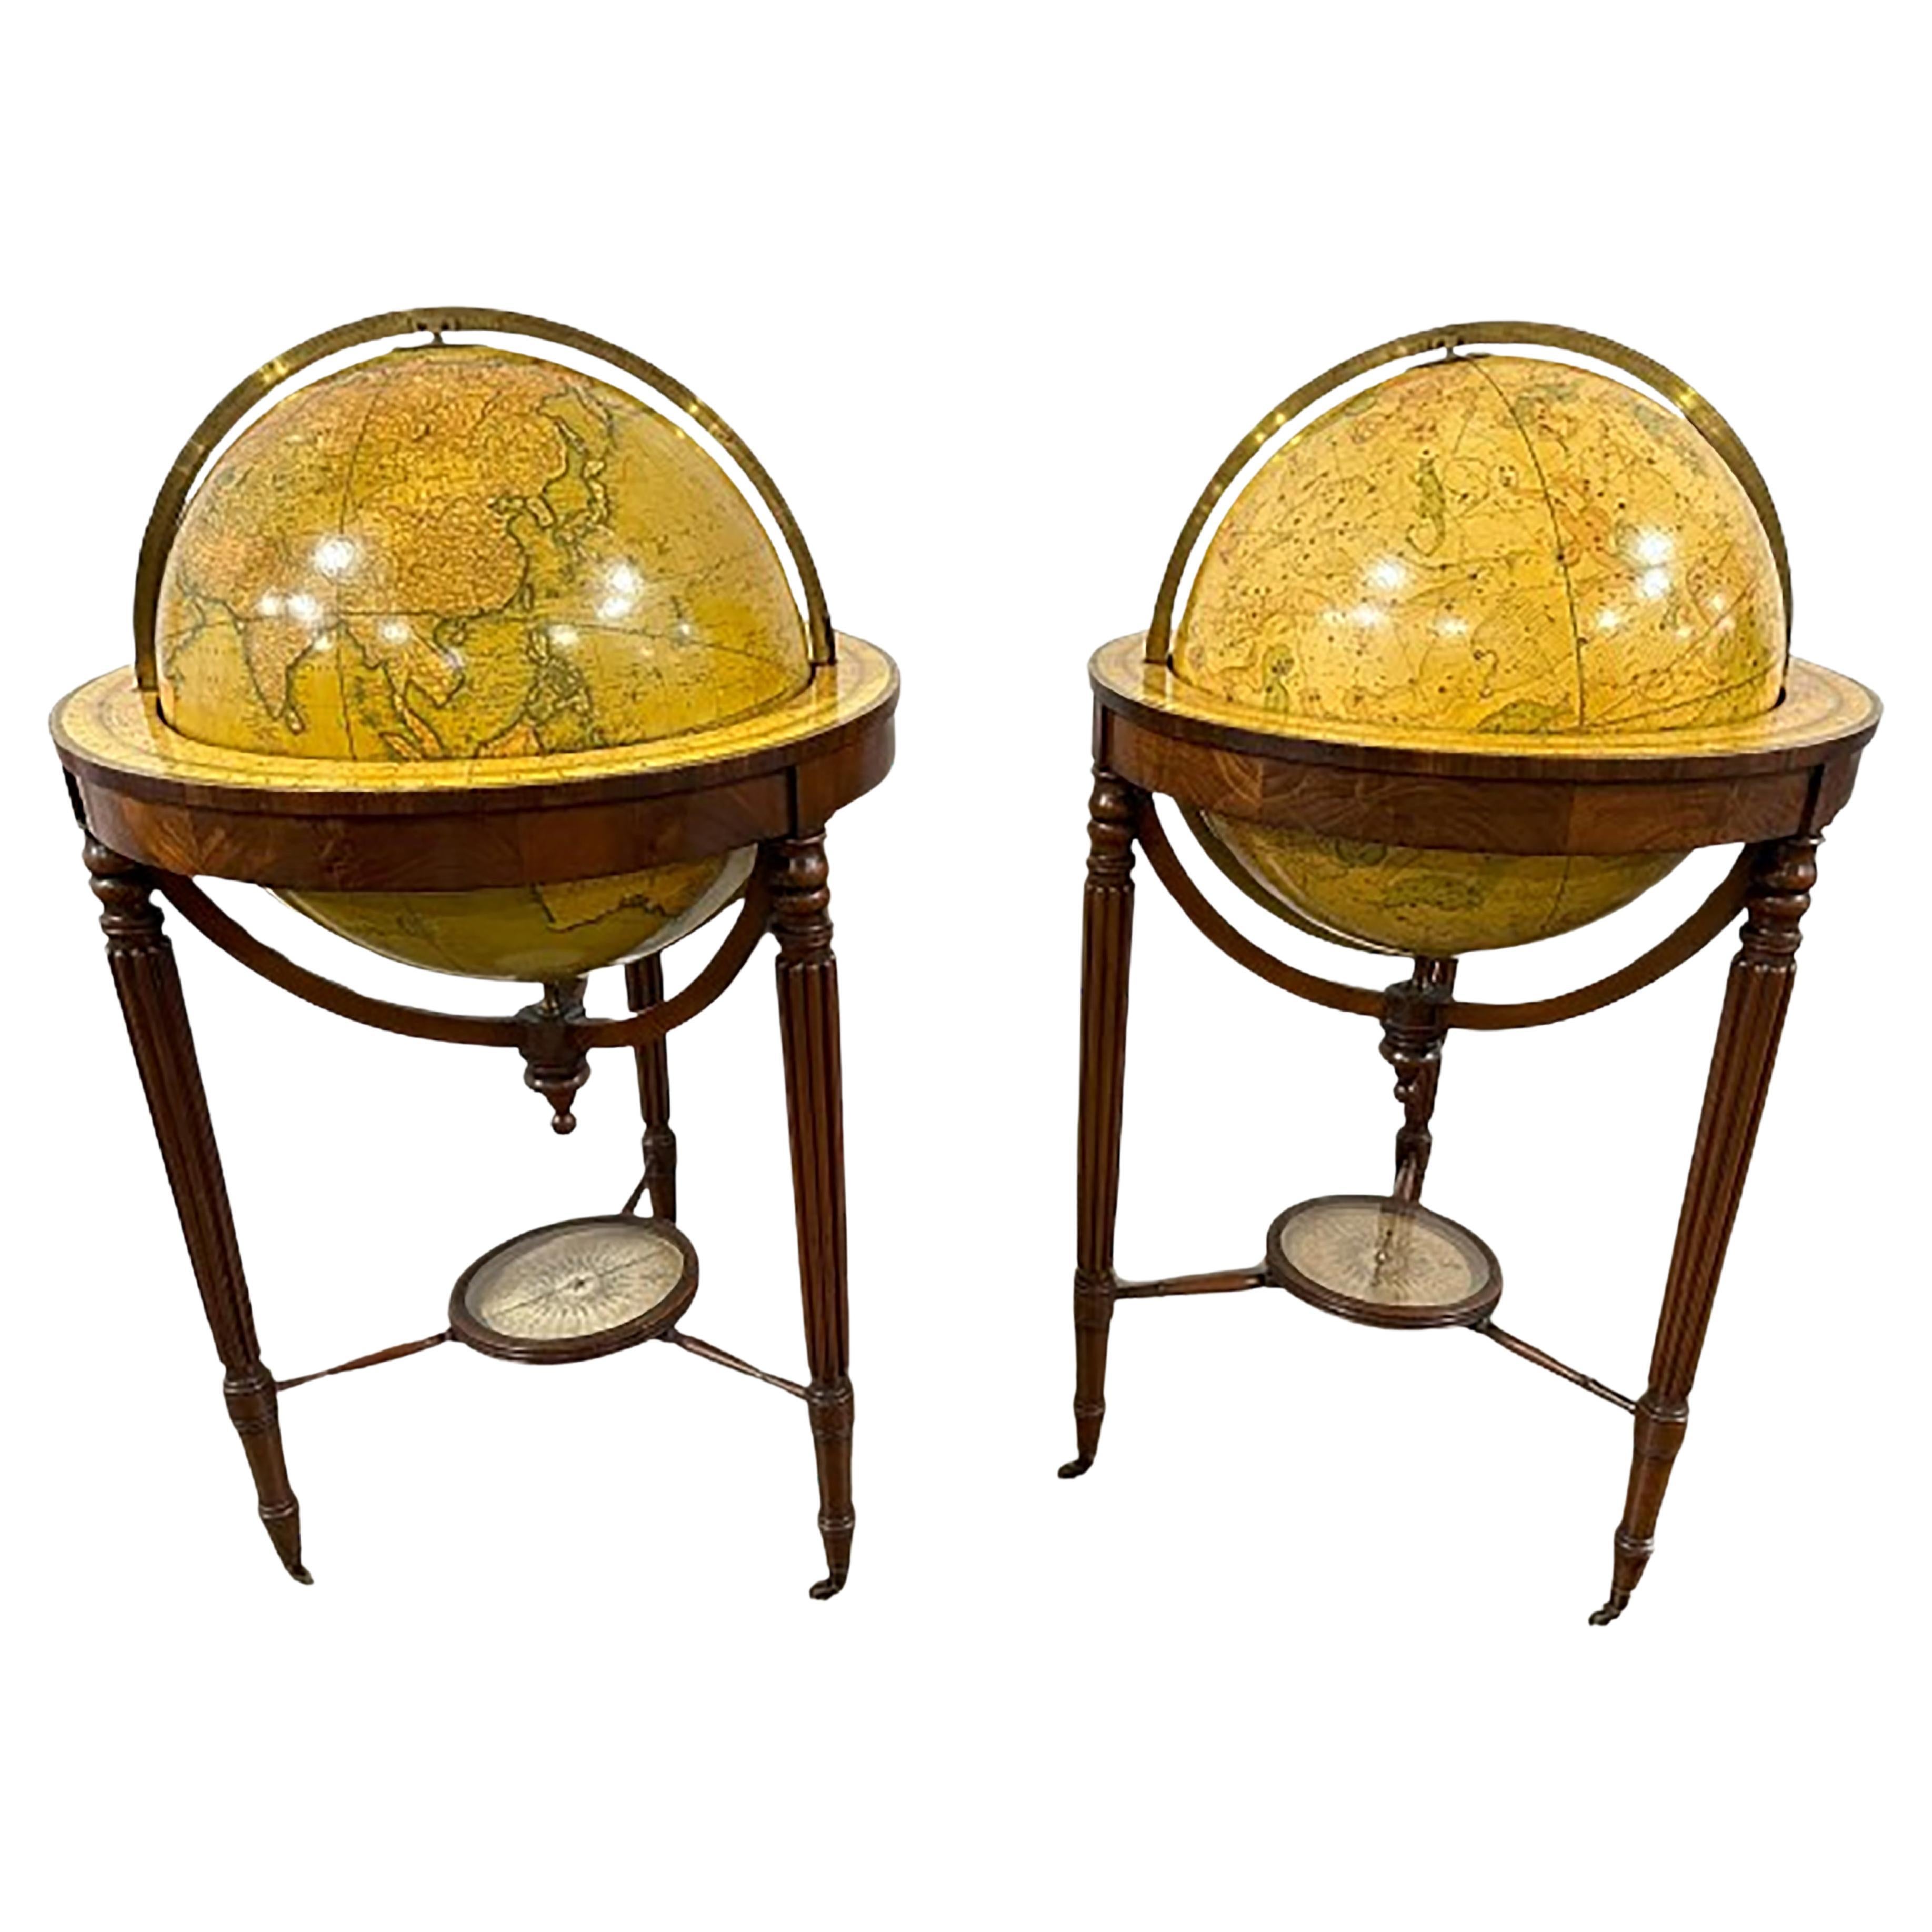 Paire de globes de bibliothèque terrestre Cruchley du 19ème siècle avec balances 